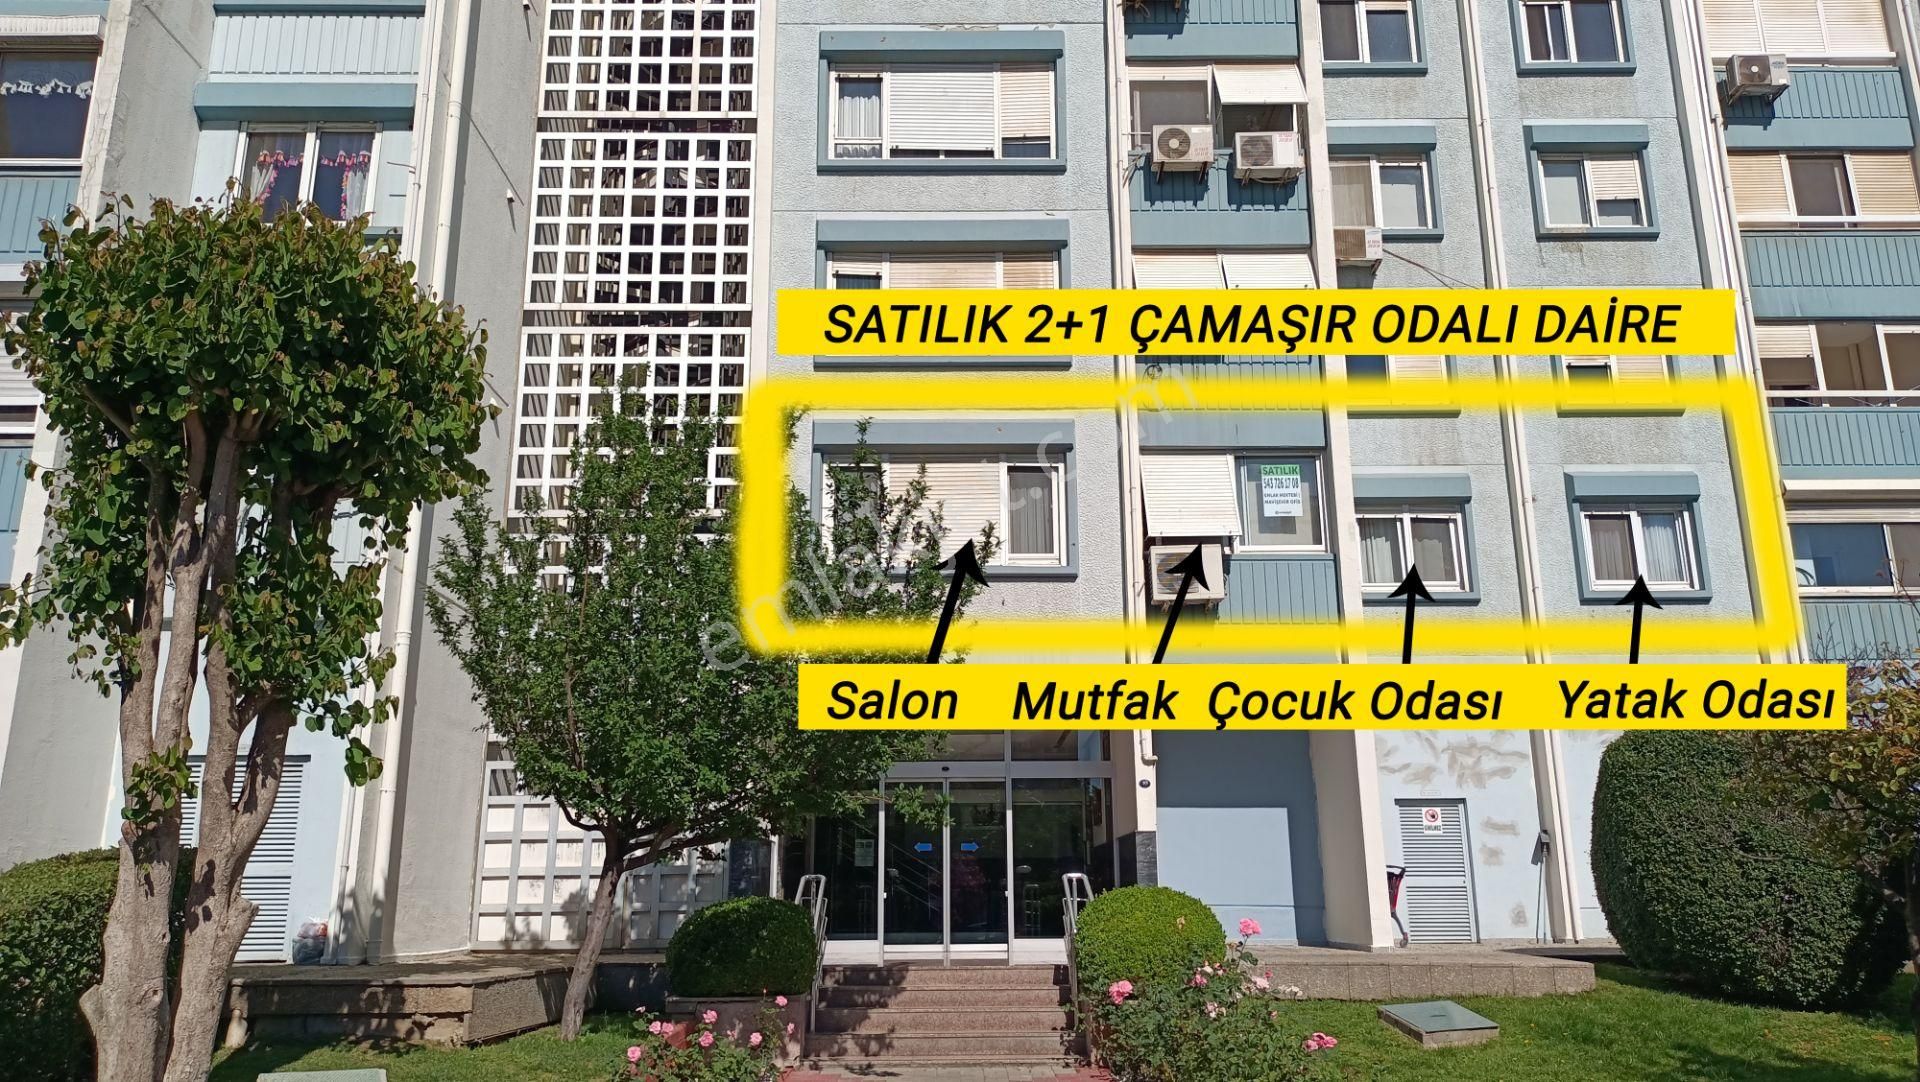 Karşıyaka Mavişehir Satılık Daire  Mavişehir Pamukkale 7’de 2+1 Full Tadilatlı Satılık Daire